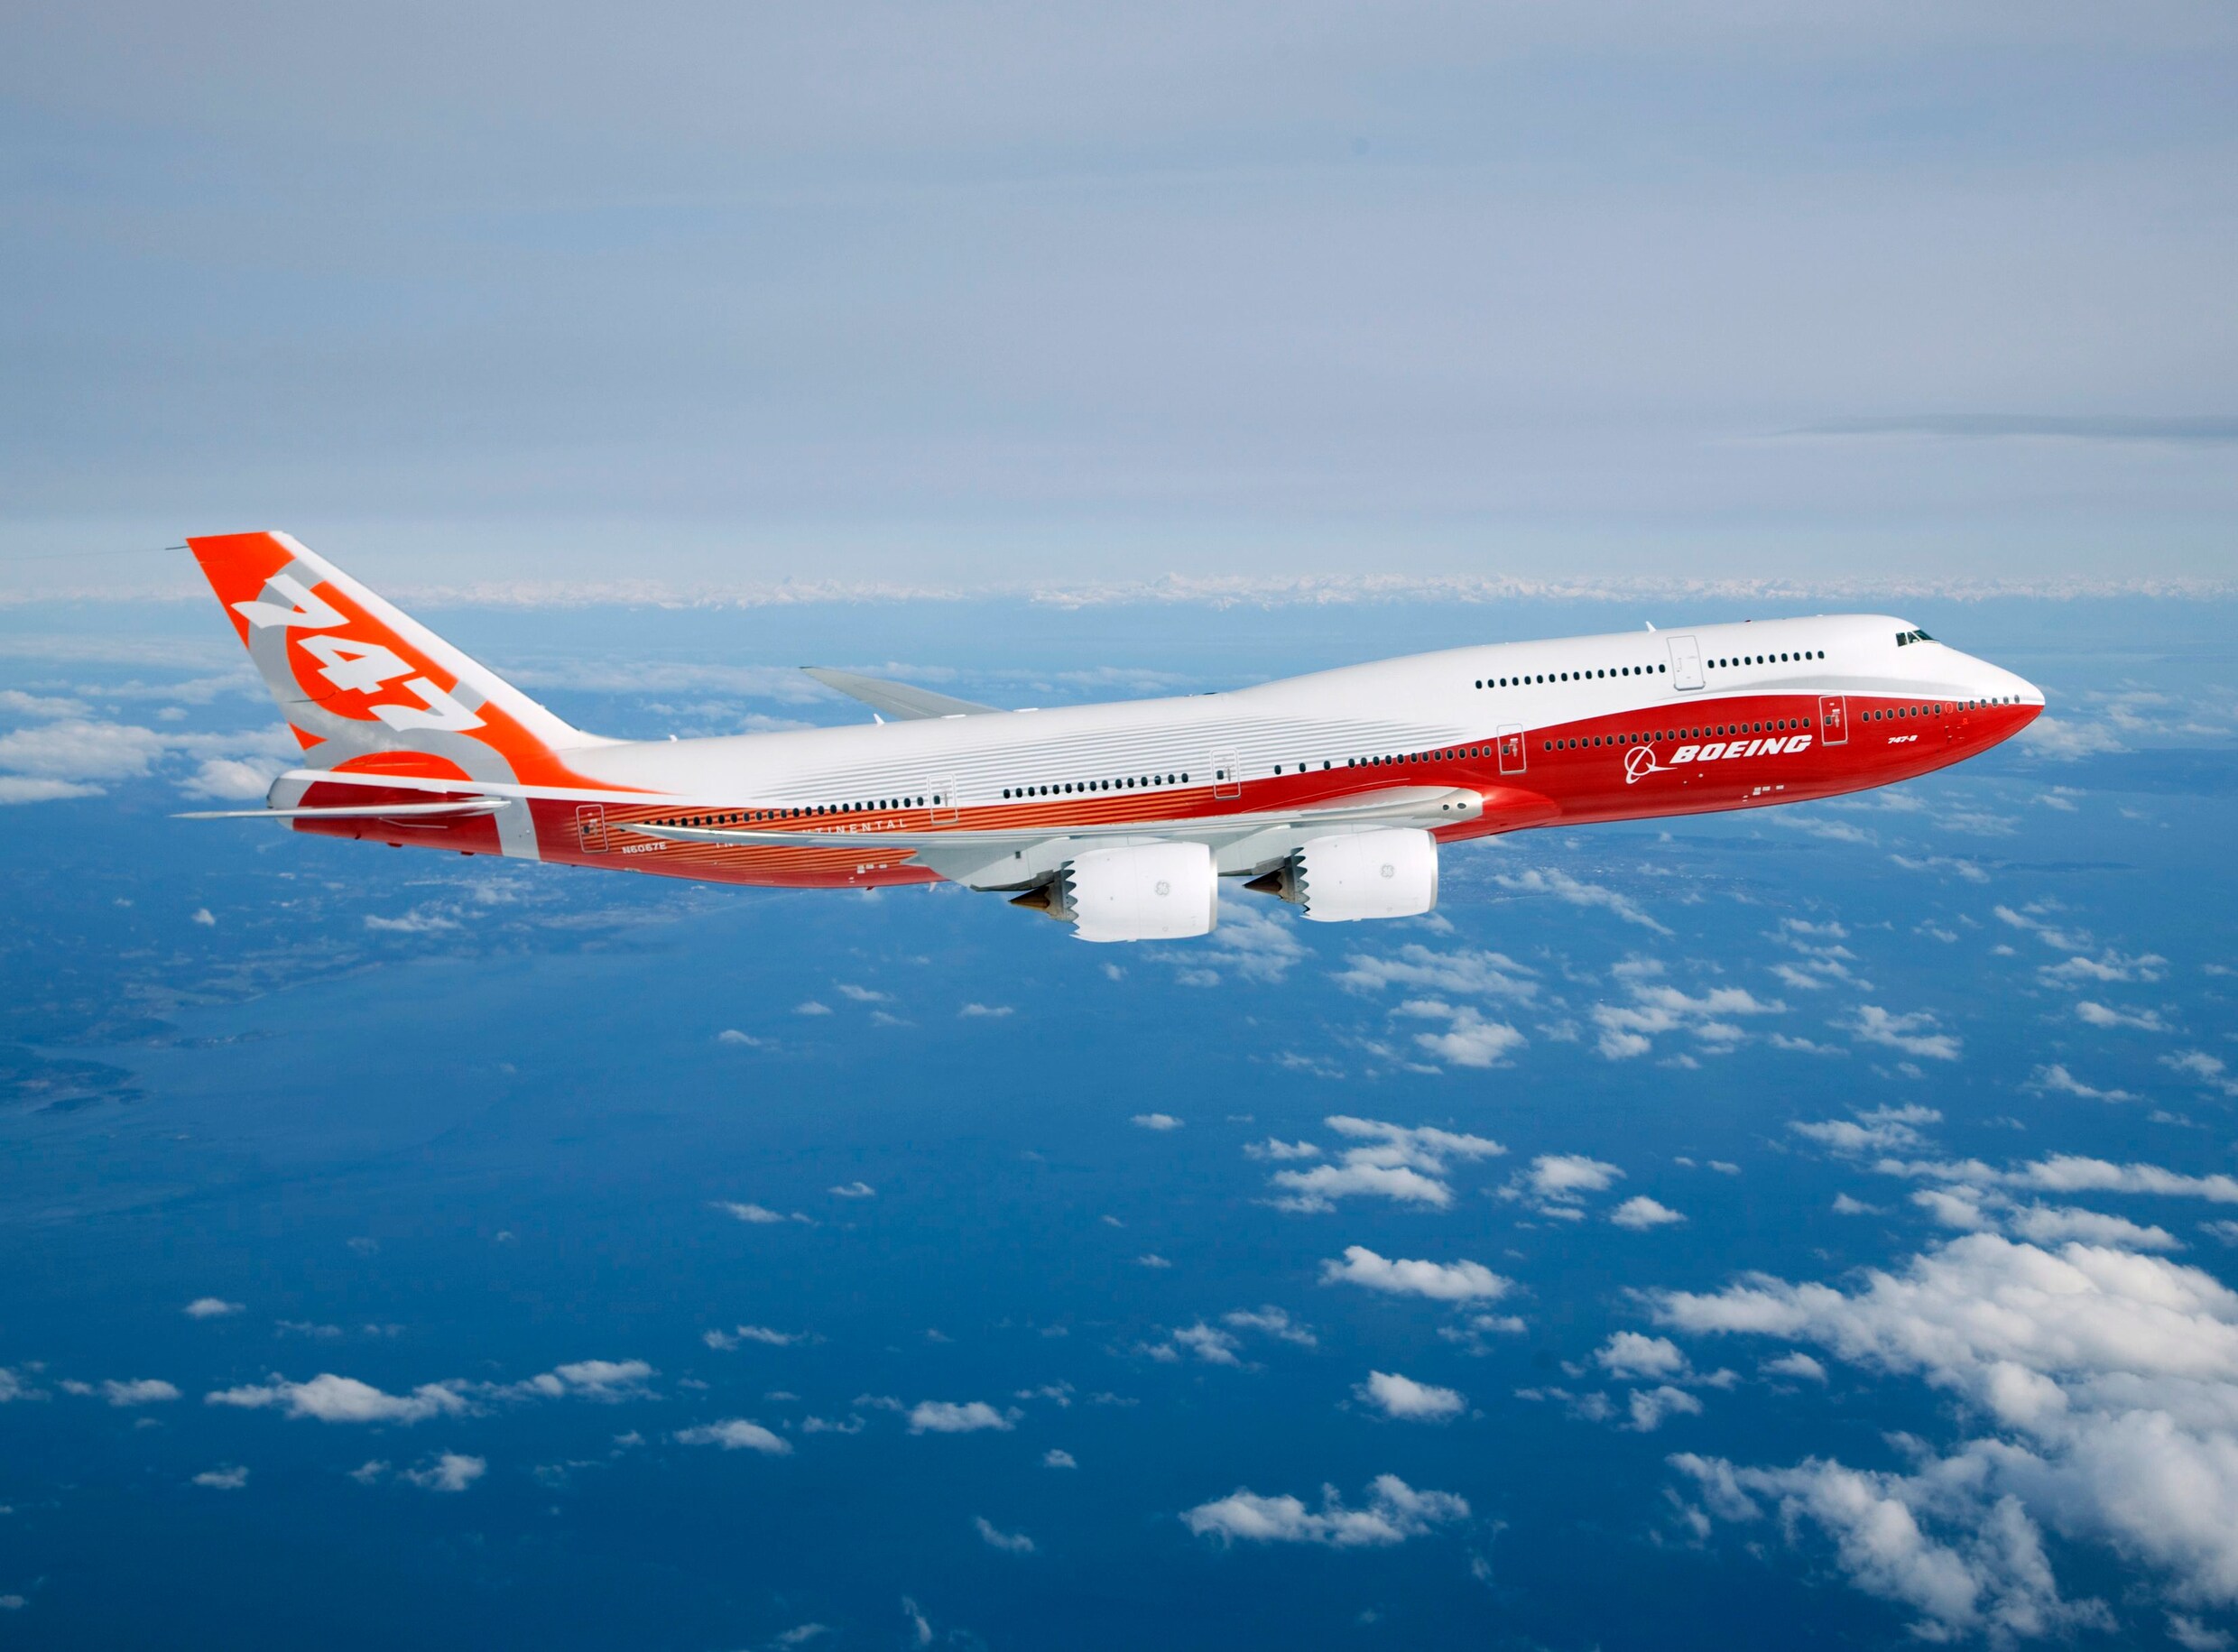 Boeing overweegt productiestop van beroemde jumbojet, de 747